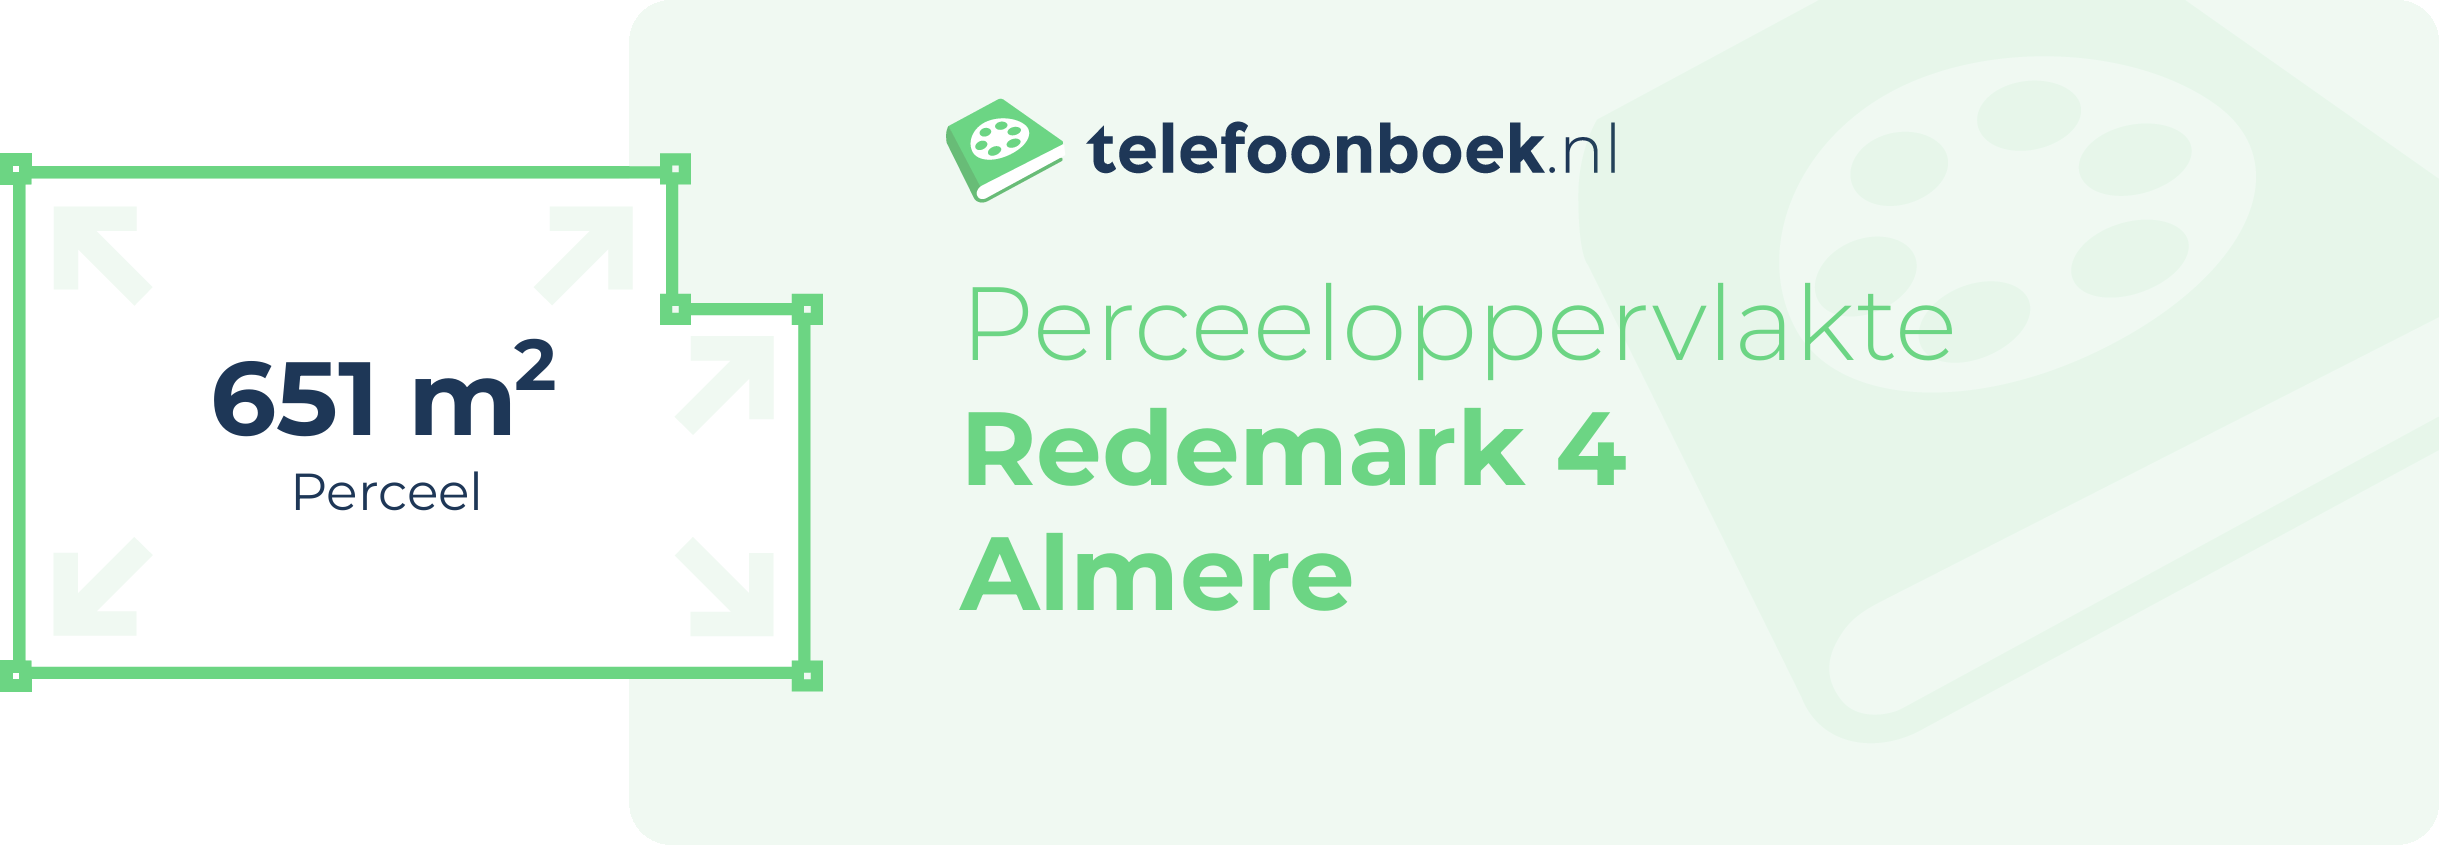 Perceeloppervlakte Redemark 4 Almere